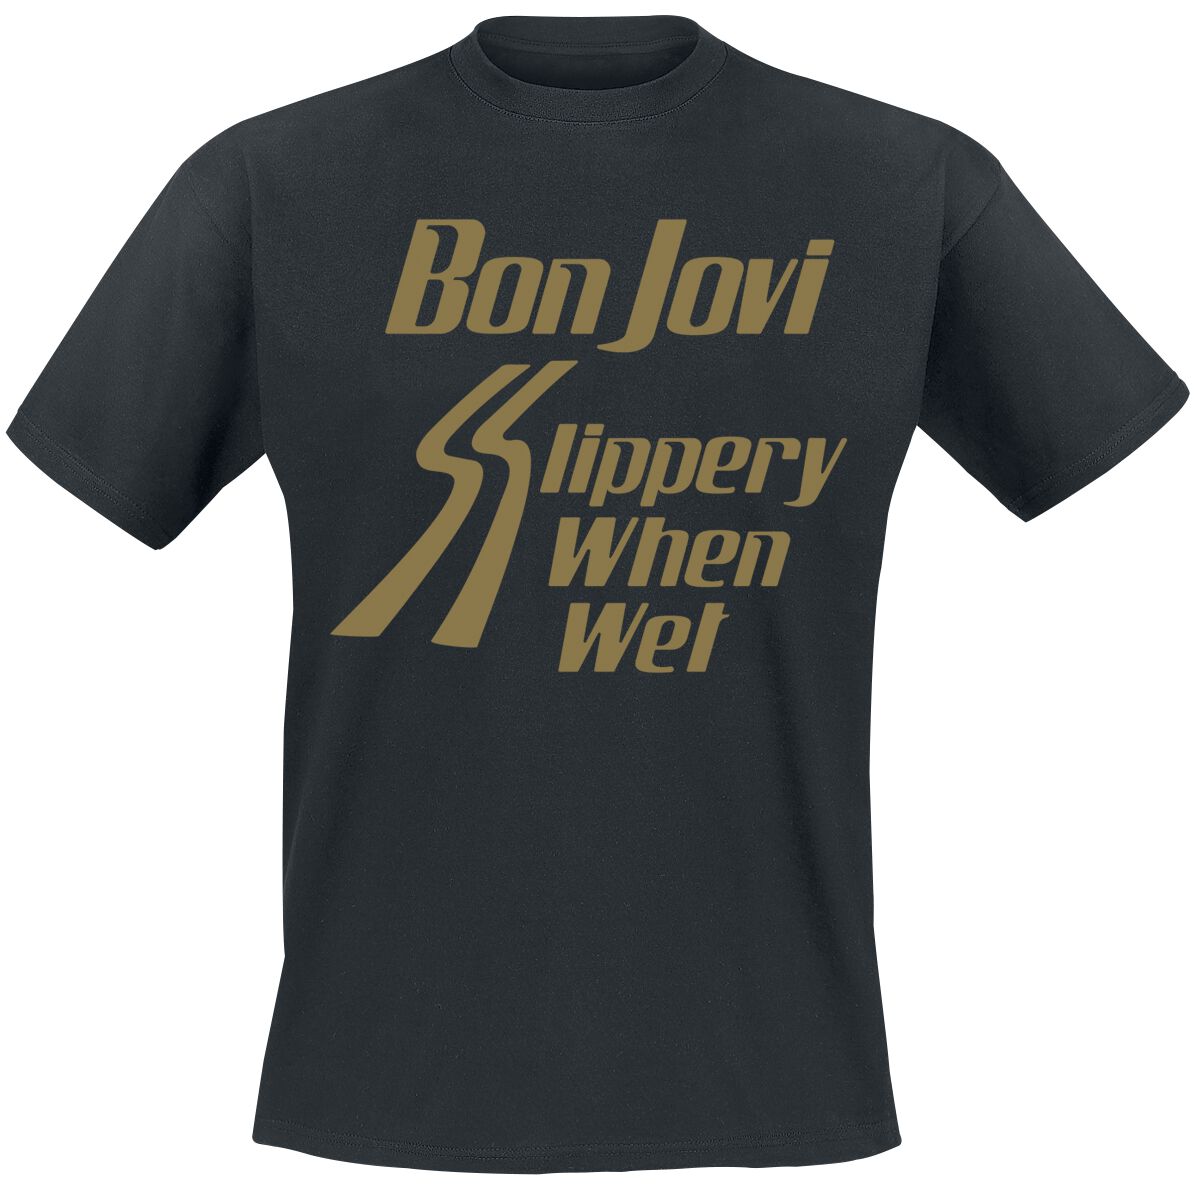 Bon Jovi T-Shirt - Slippery When Wet - S bis 3XL - für Männer - Größe S - schwarz  - Lizenziertes Merchandise!